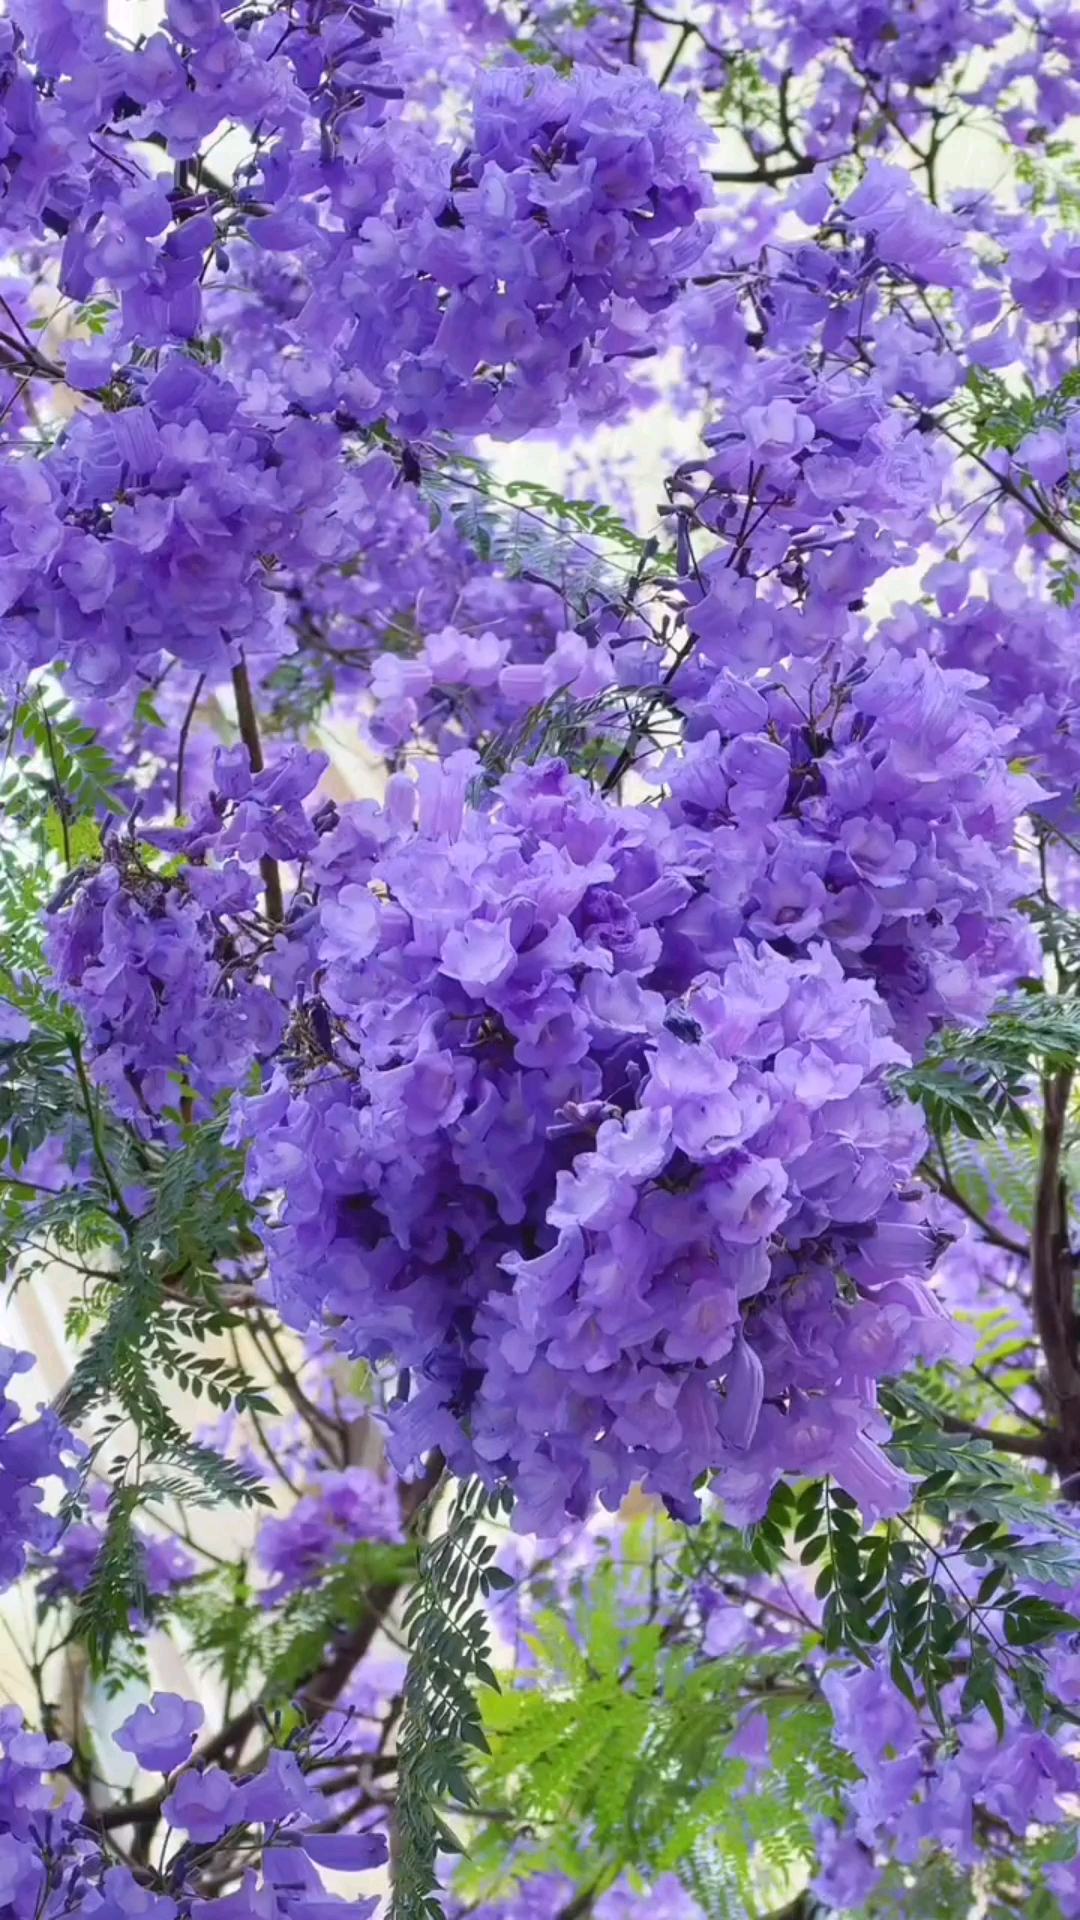 醉美蓝花楹,紫色的浪漫你们喜欢这样的花吗?